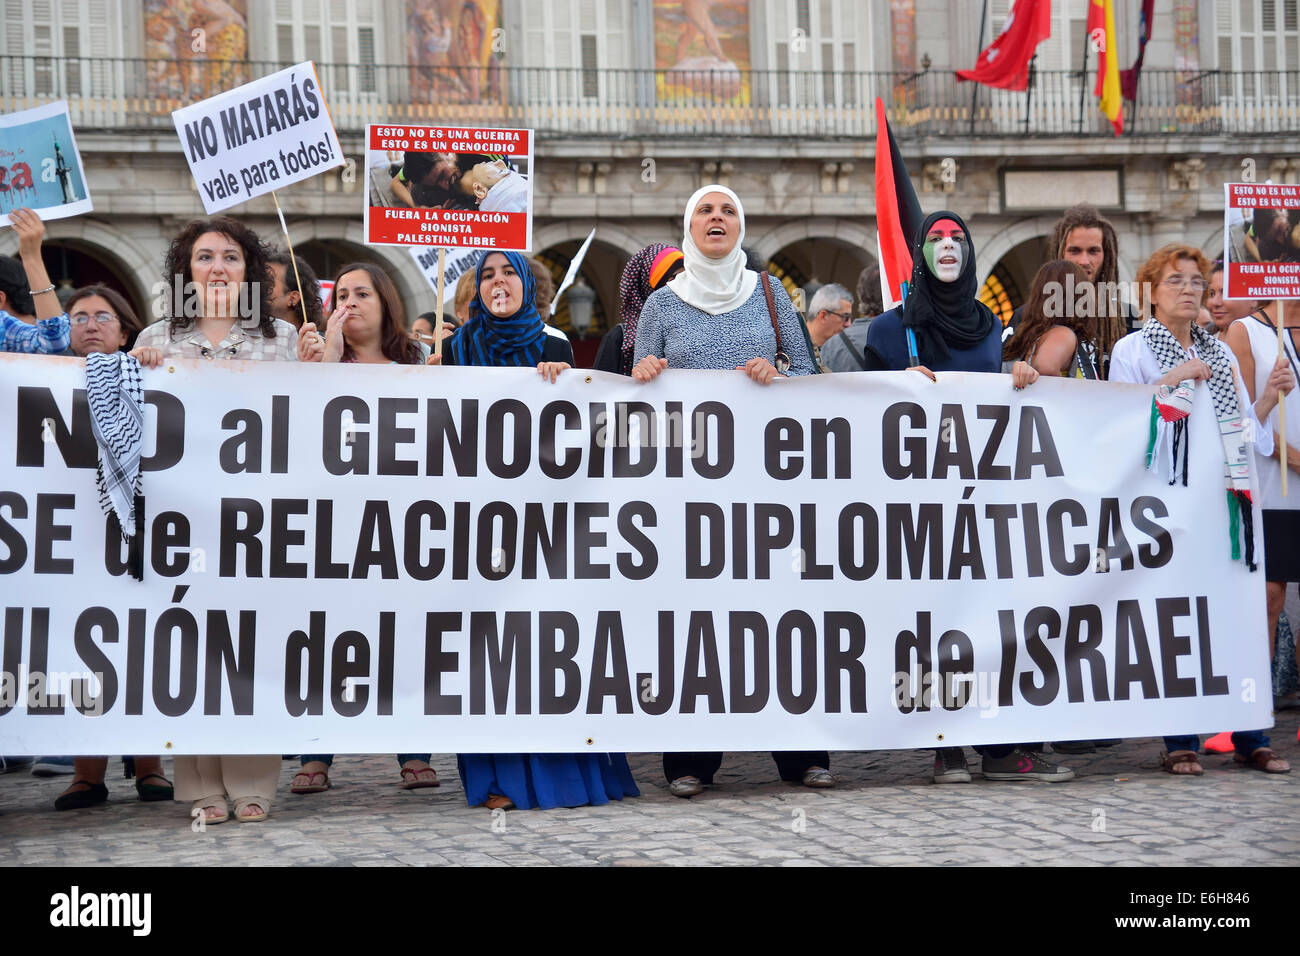 Bannière principale d'une protestation contre Israël au cours d'une manifestation des Palestiniens, à Madrid le 14 août 2014. L'Espagne. Banque D'Images